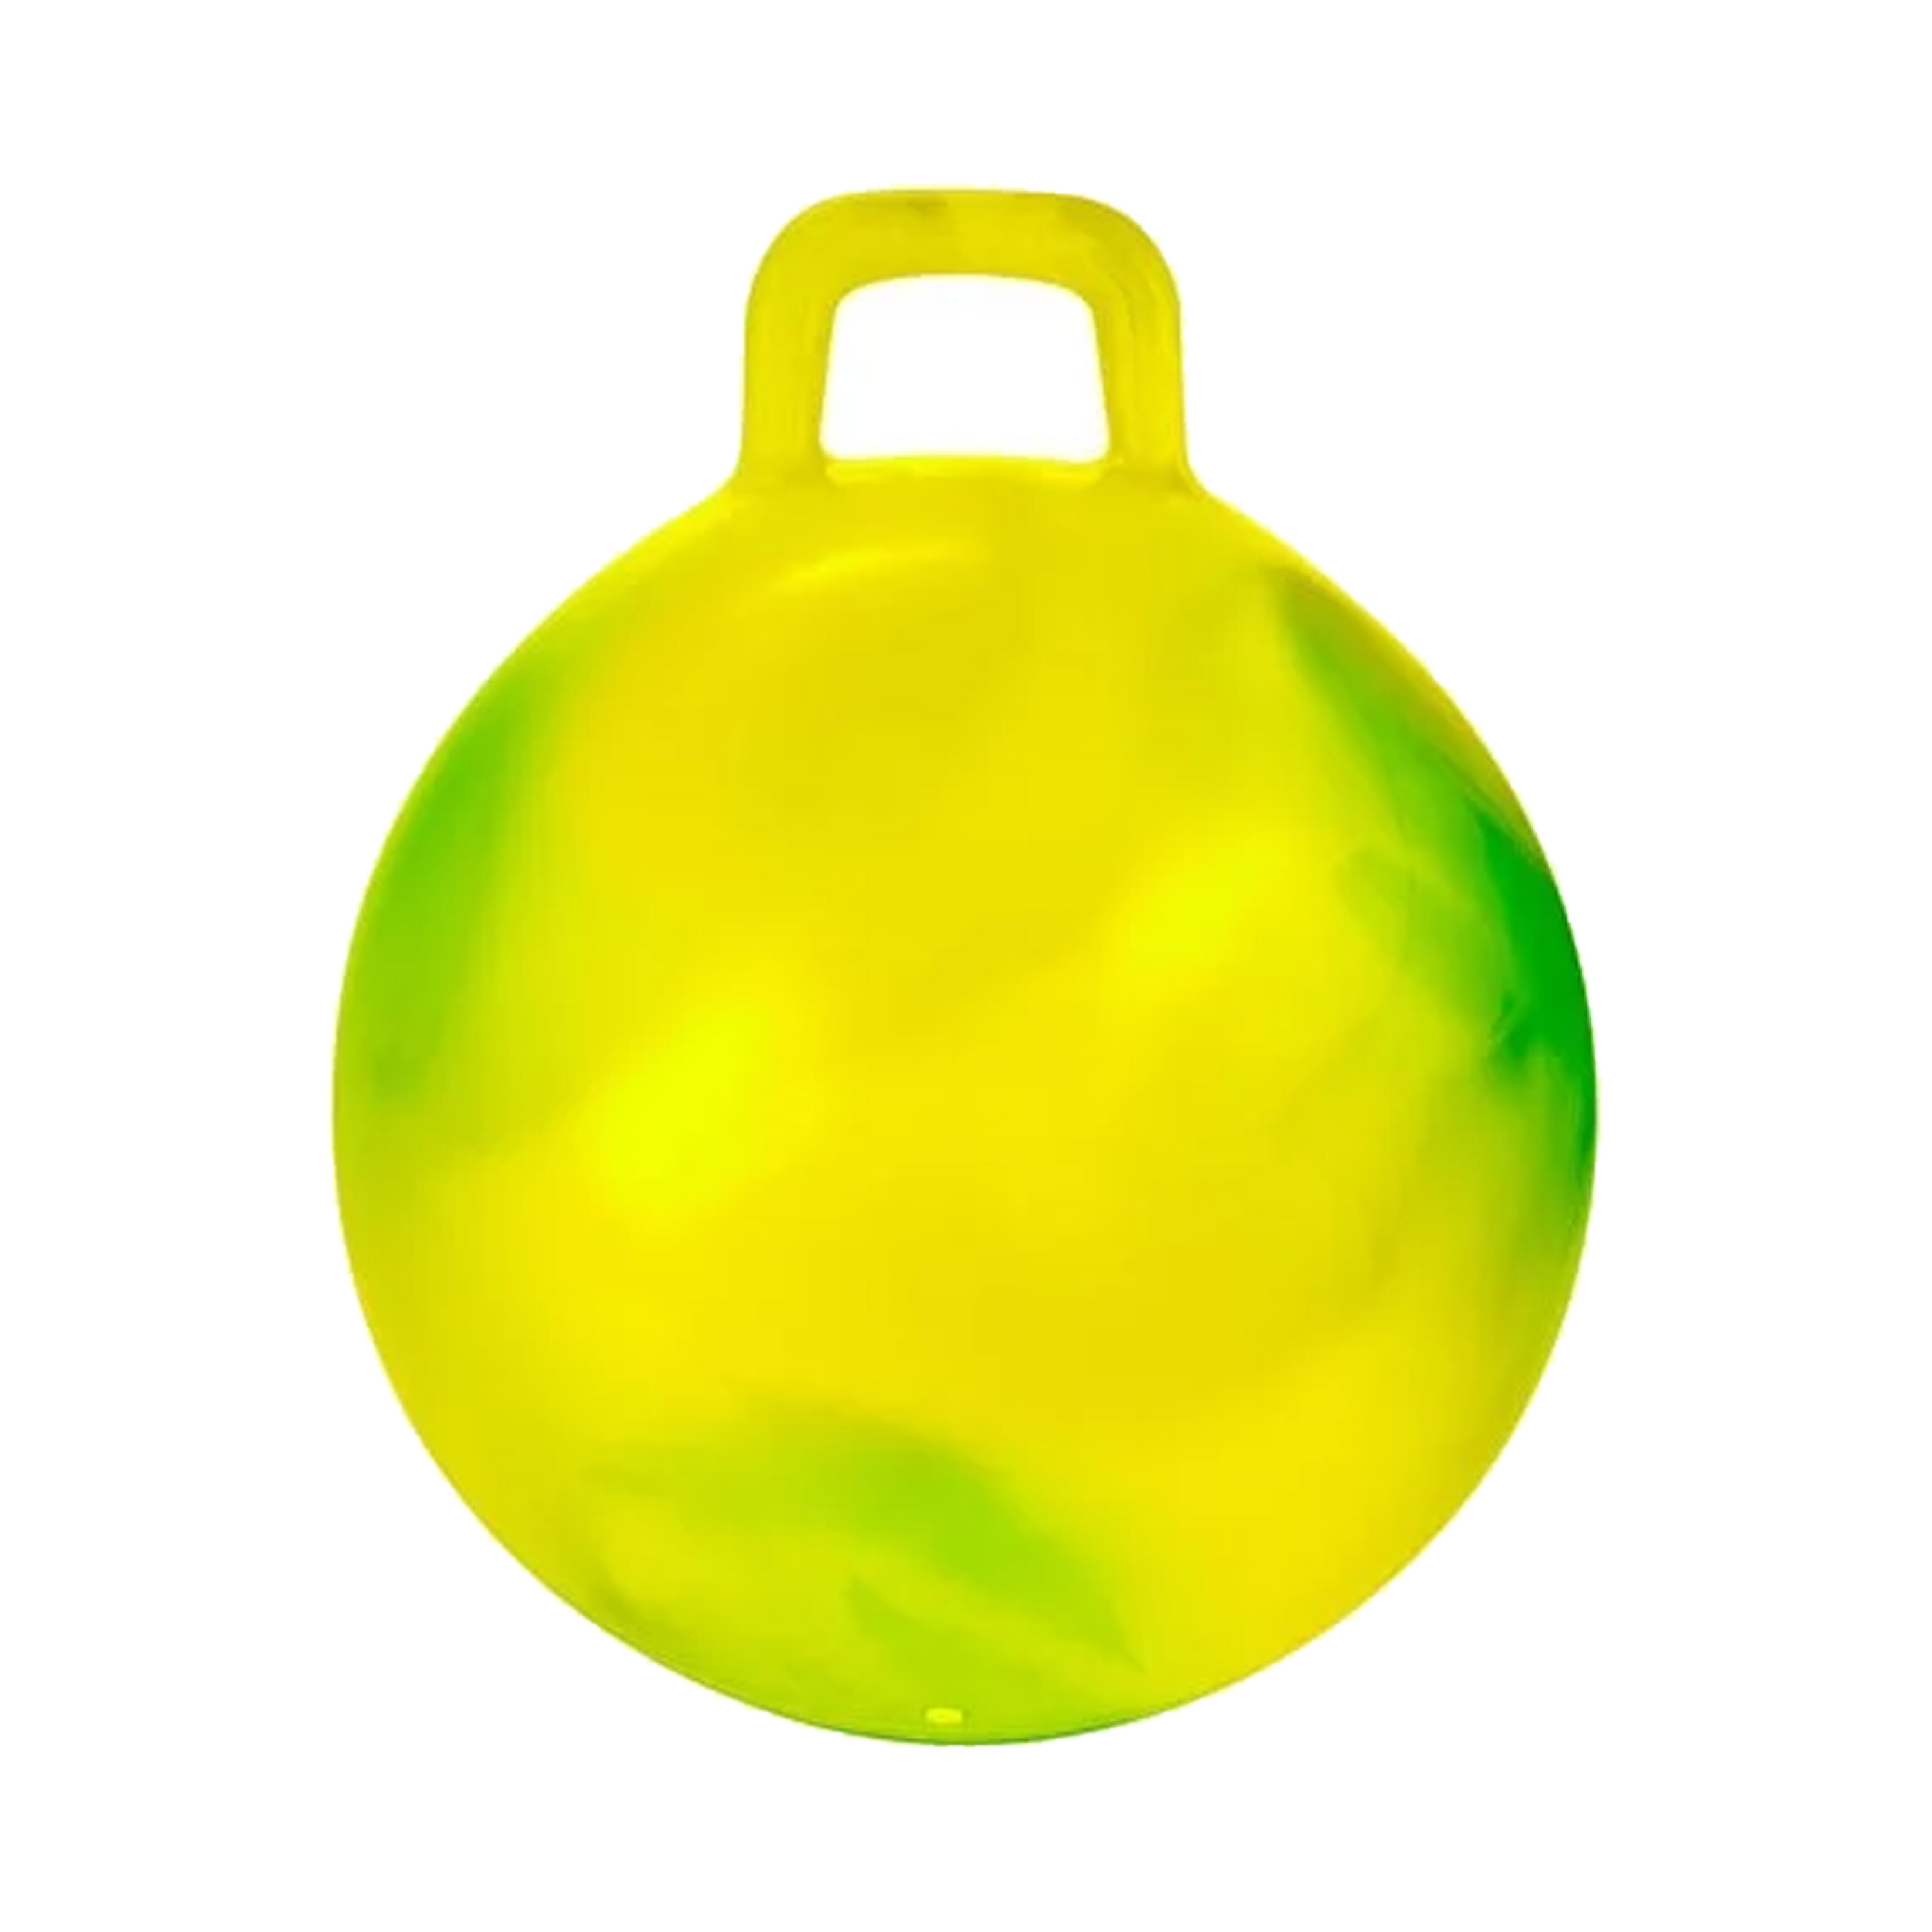 Skippybal marble - geel/groen - D45 cm - buitenspeelgoed voor kinderen -